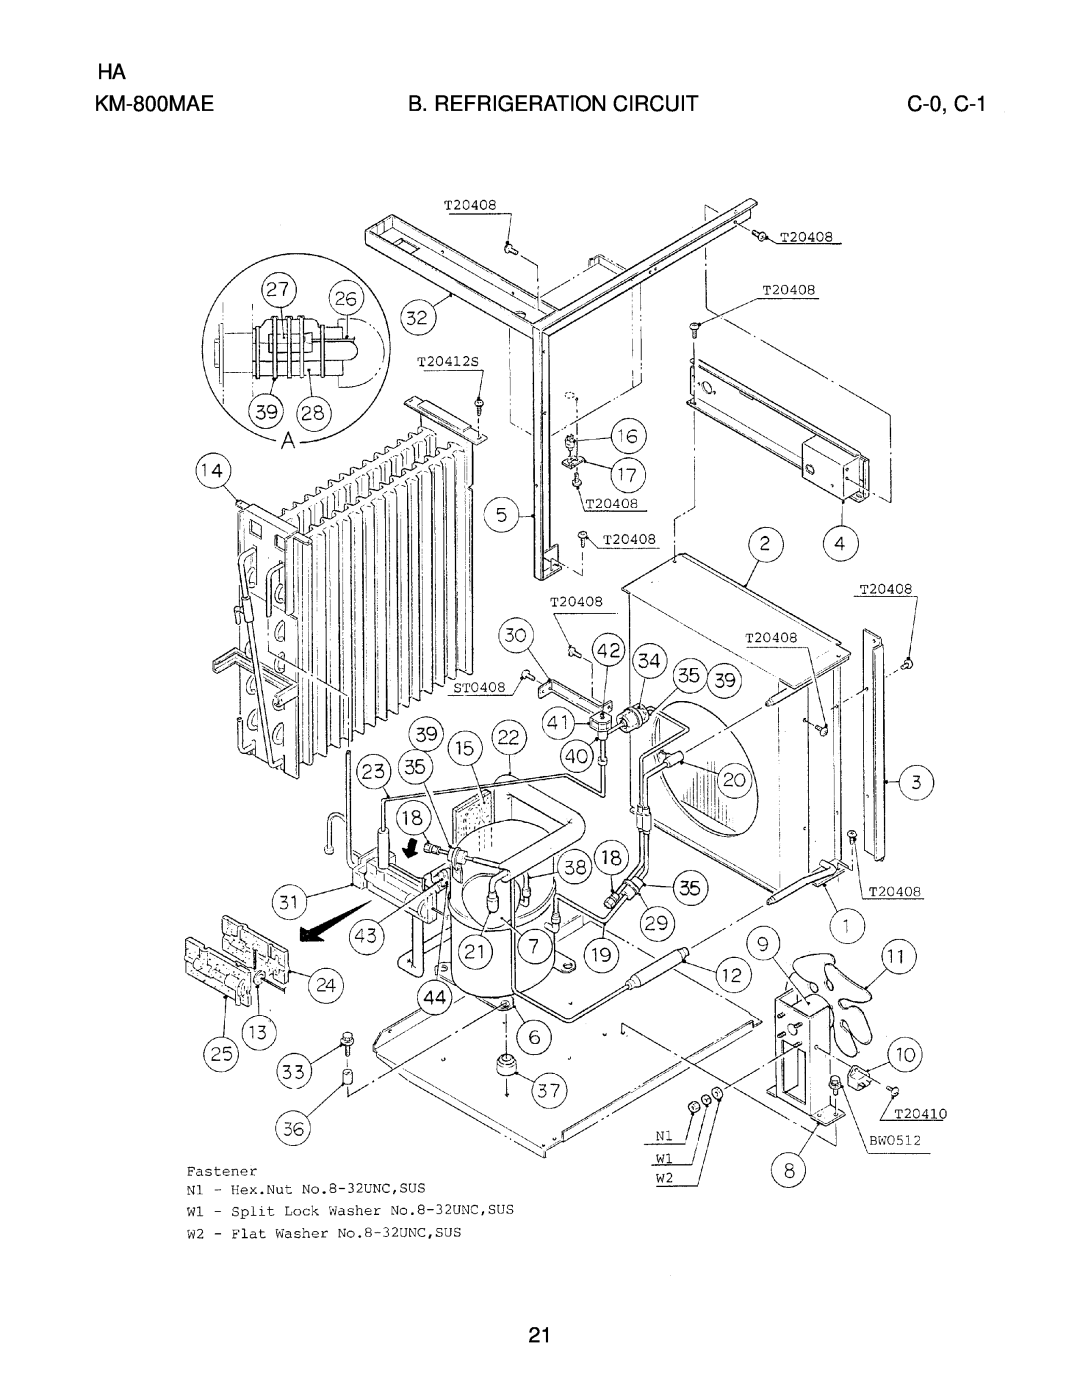 Hoshizaki KM-800MWE, KM-800MRE manual B. Refrigeration Circuit, C-0, C-1, KM-800MAE 